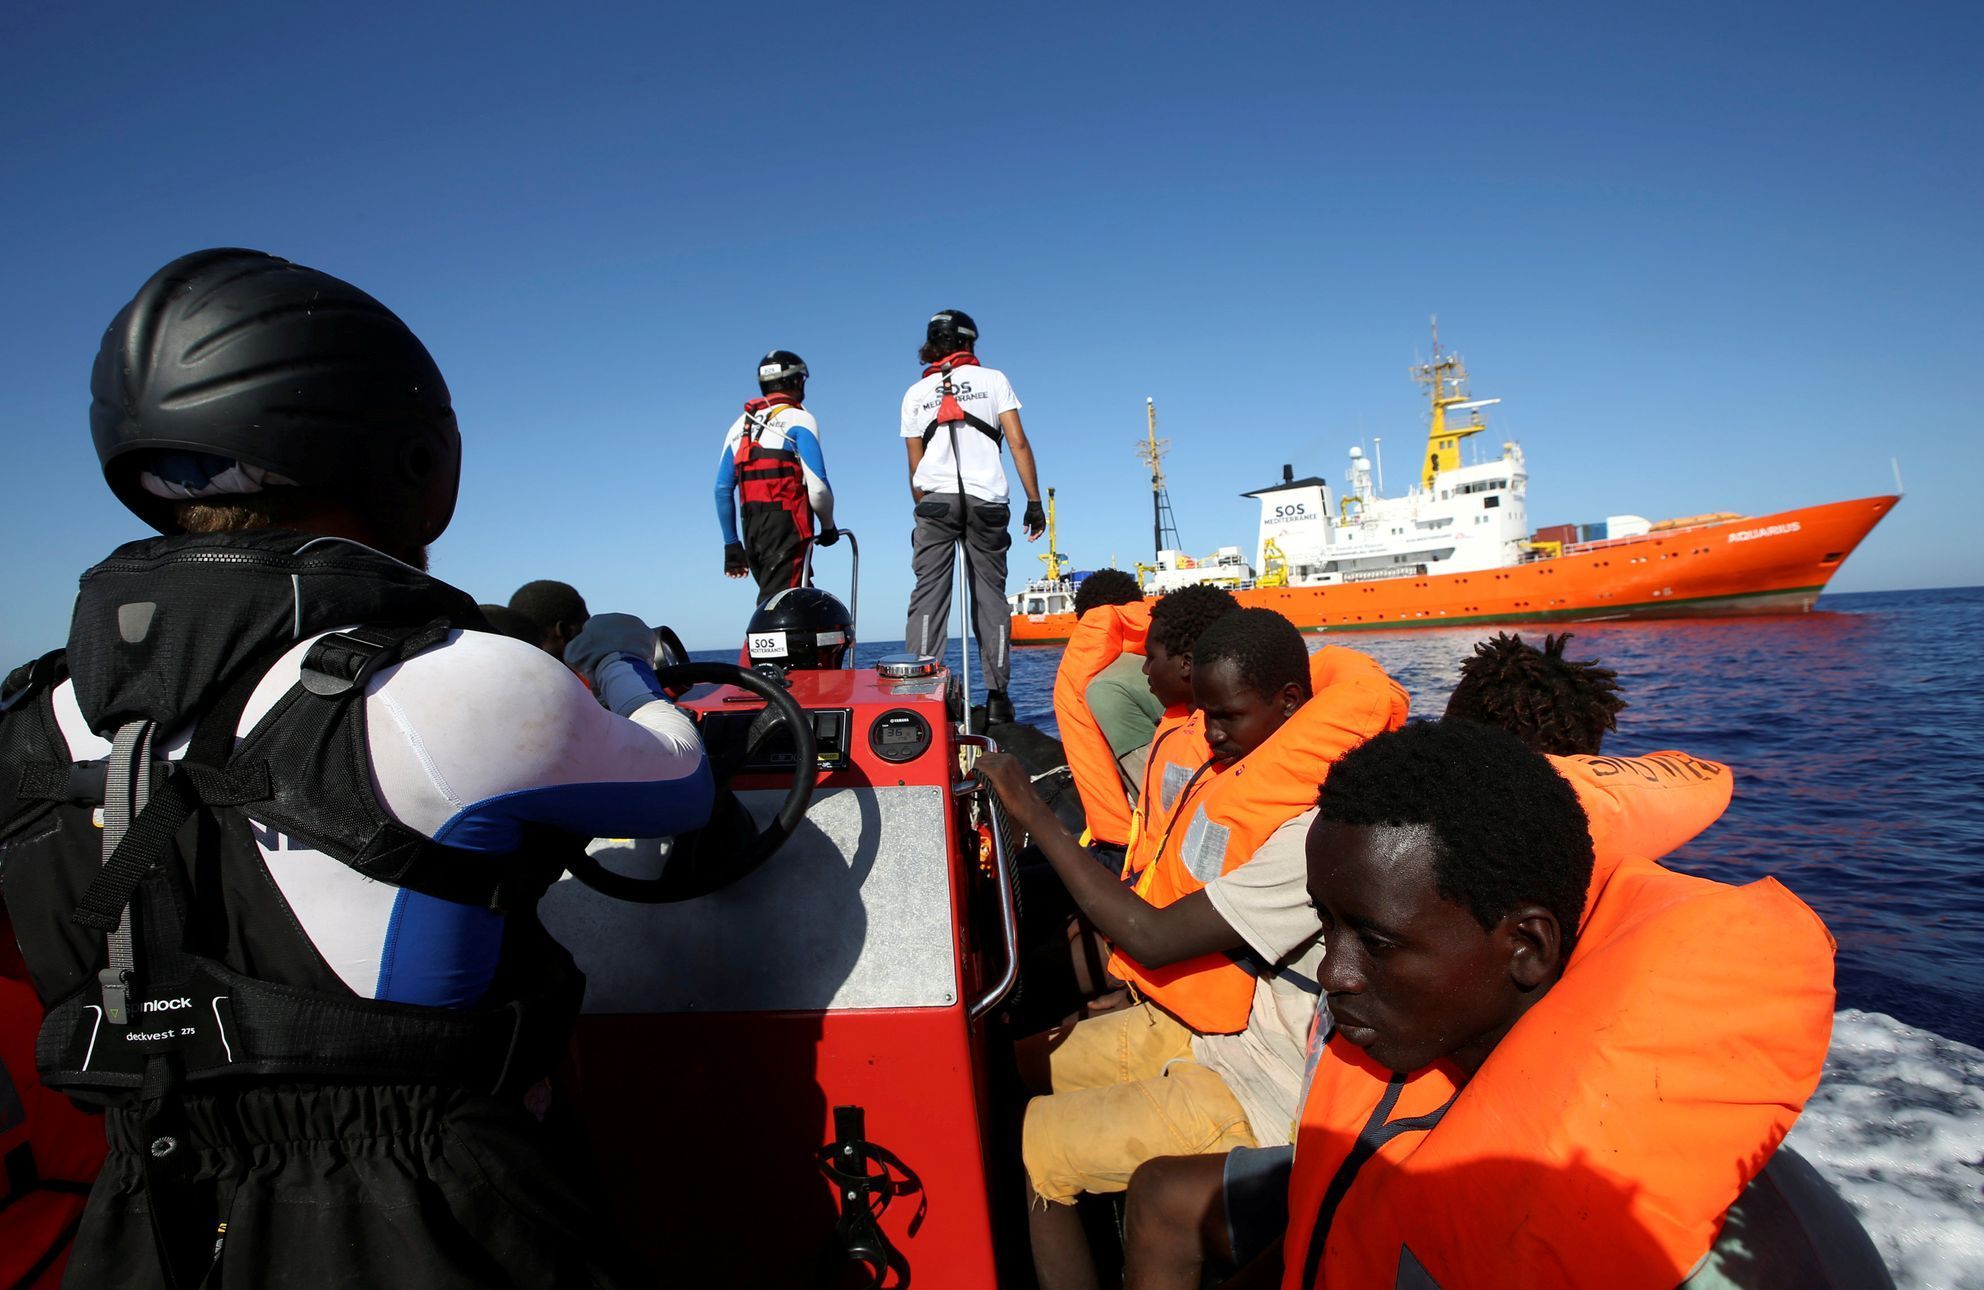 Záchranná loď Aquarius neziskové organizace SOS Méditerranée zachraňuje migranty na Středozemním moři.